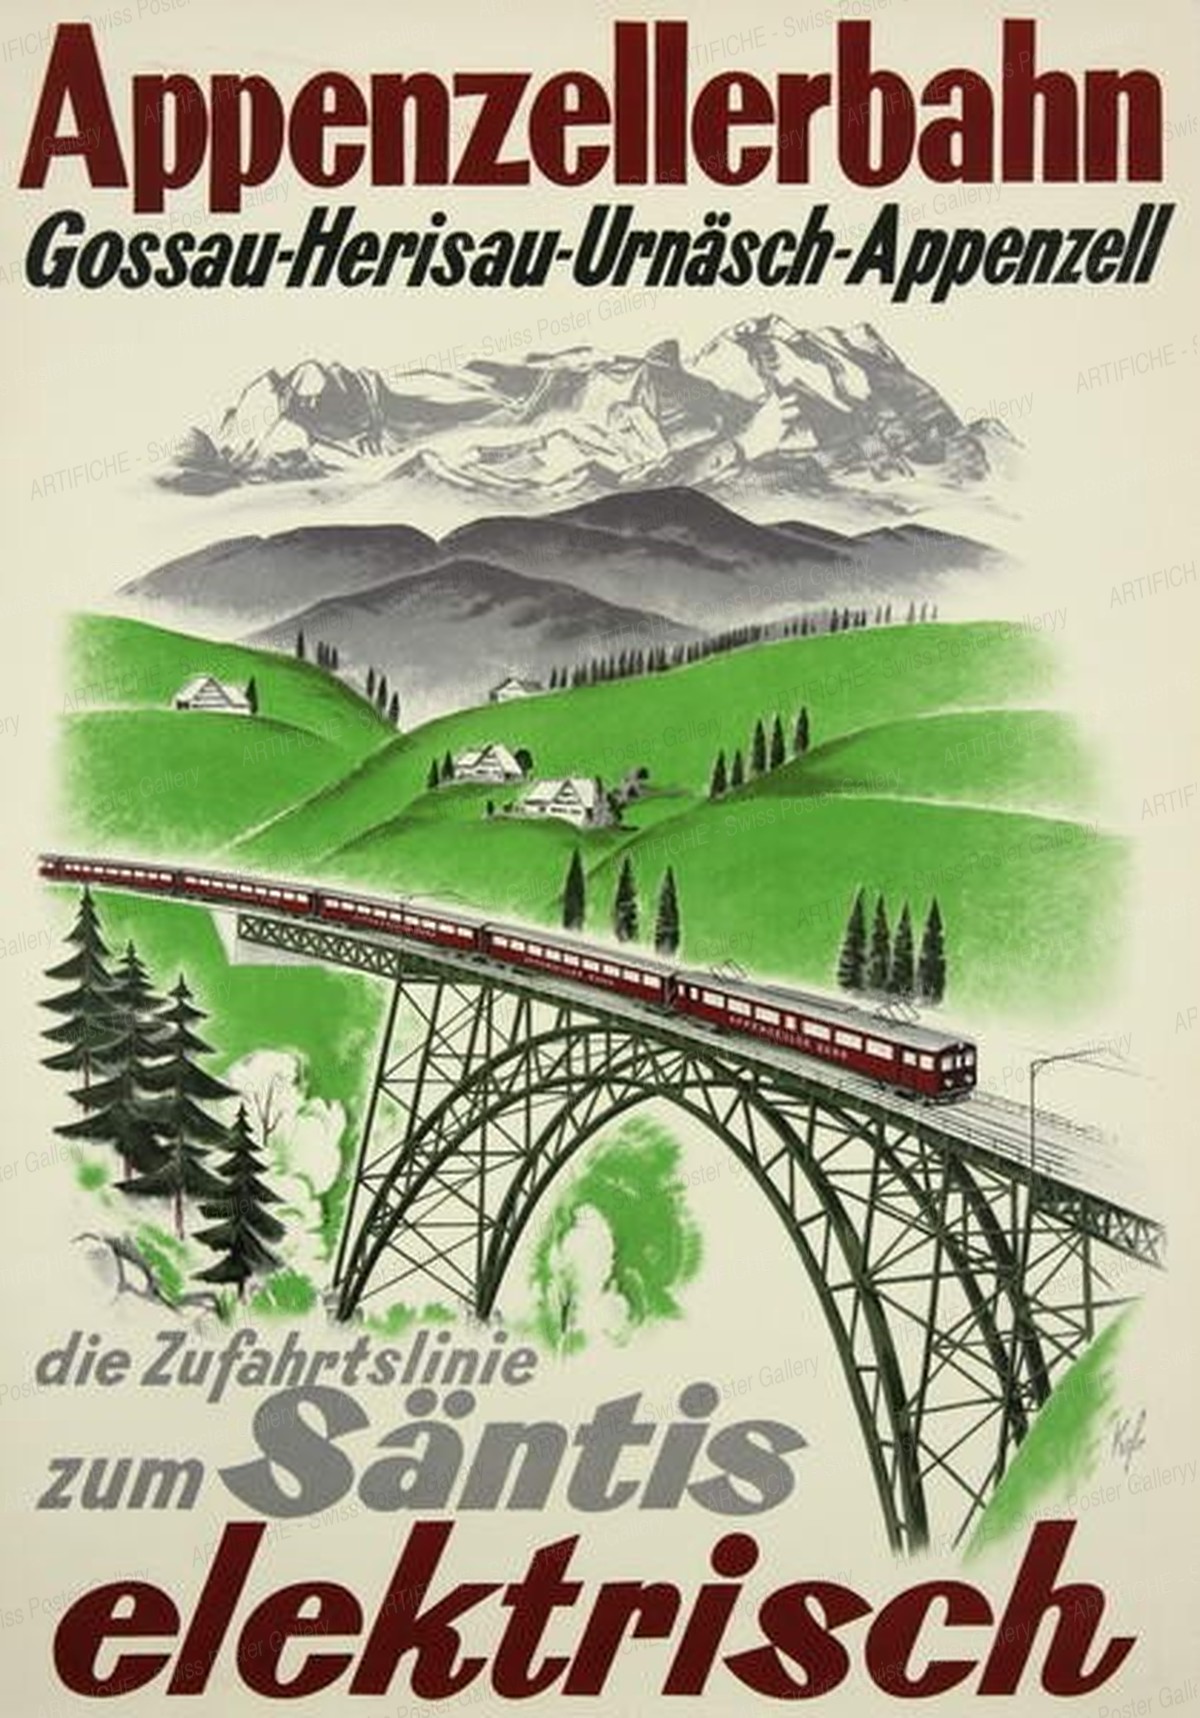 Appenzellerbahn – Gossau-Herisau Säntis – elektrisch, Kägler